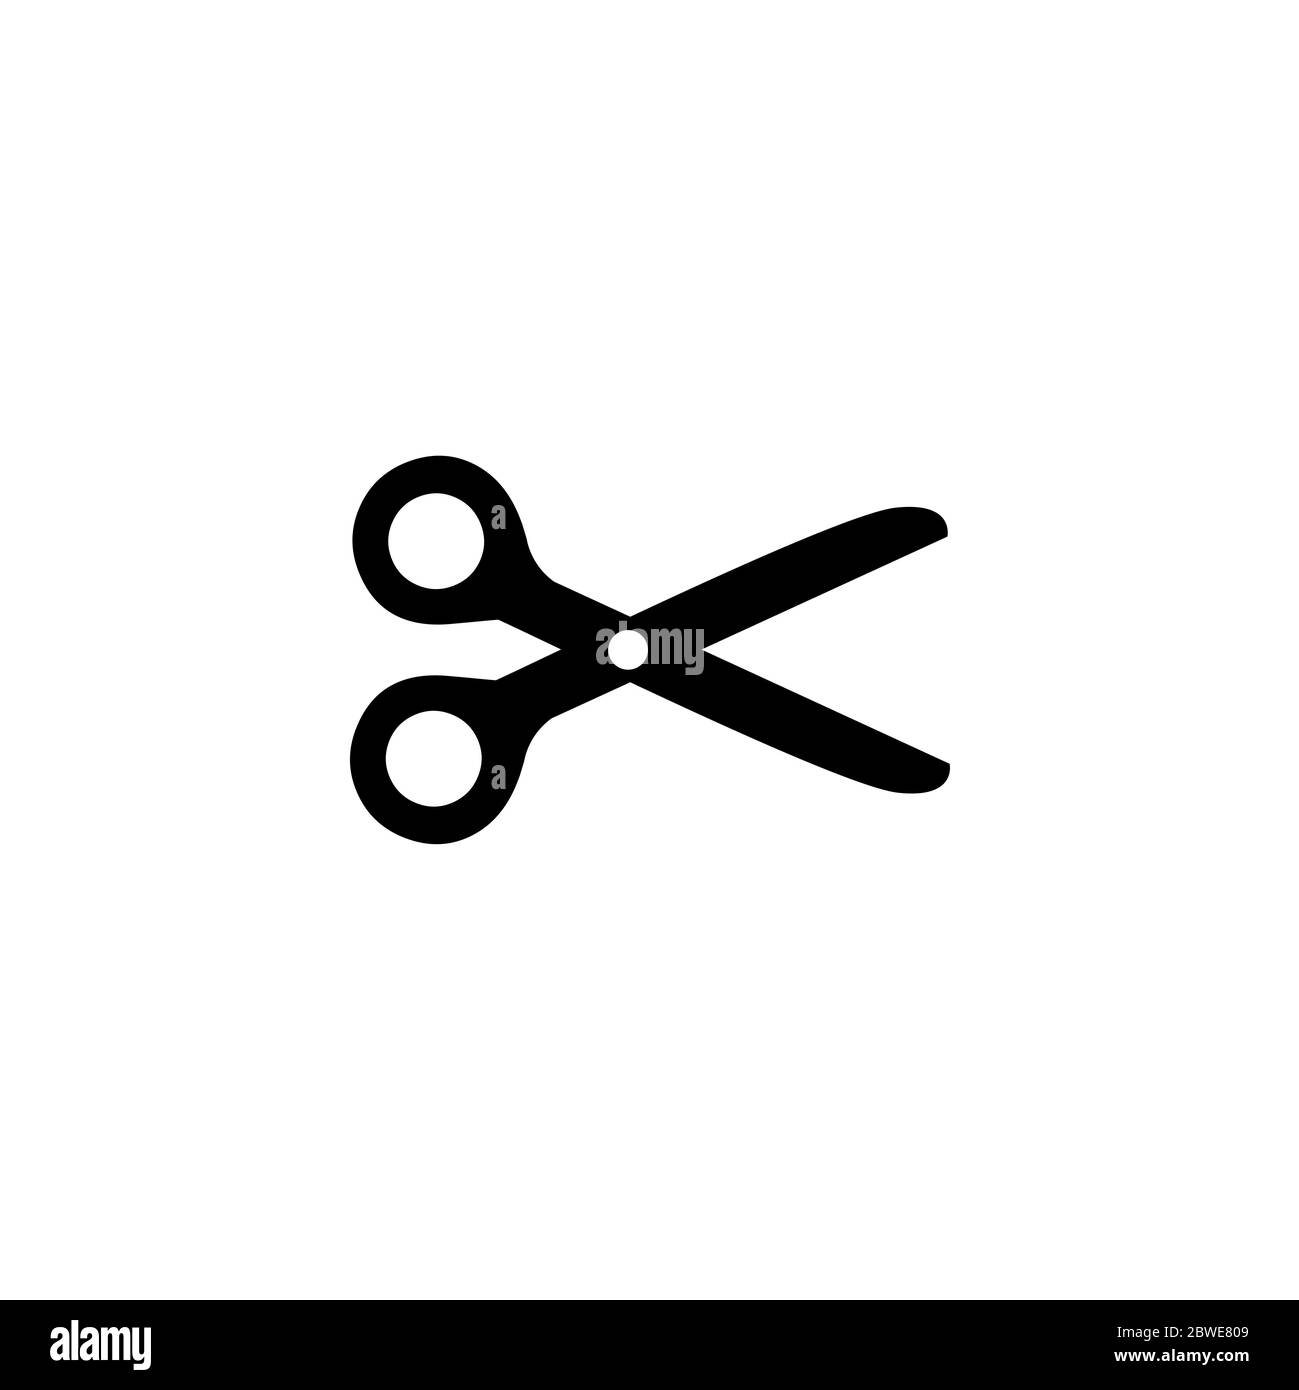 fancy scissors - Openclipart